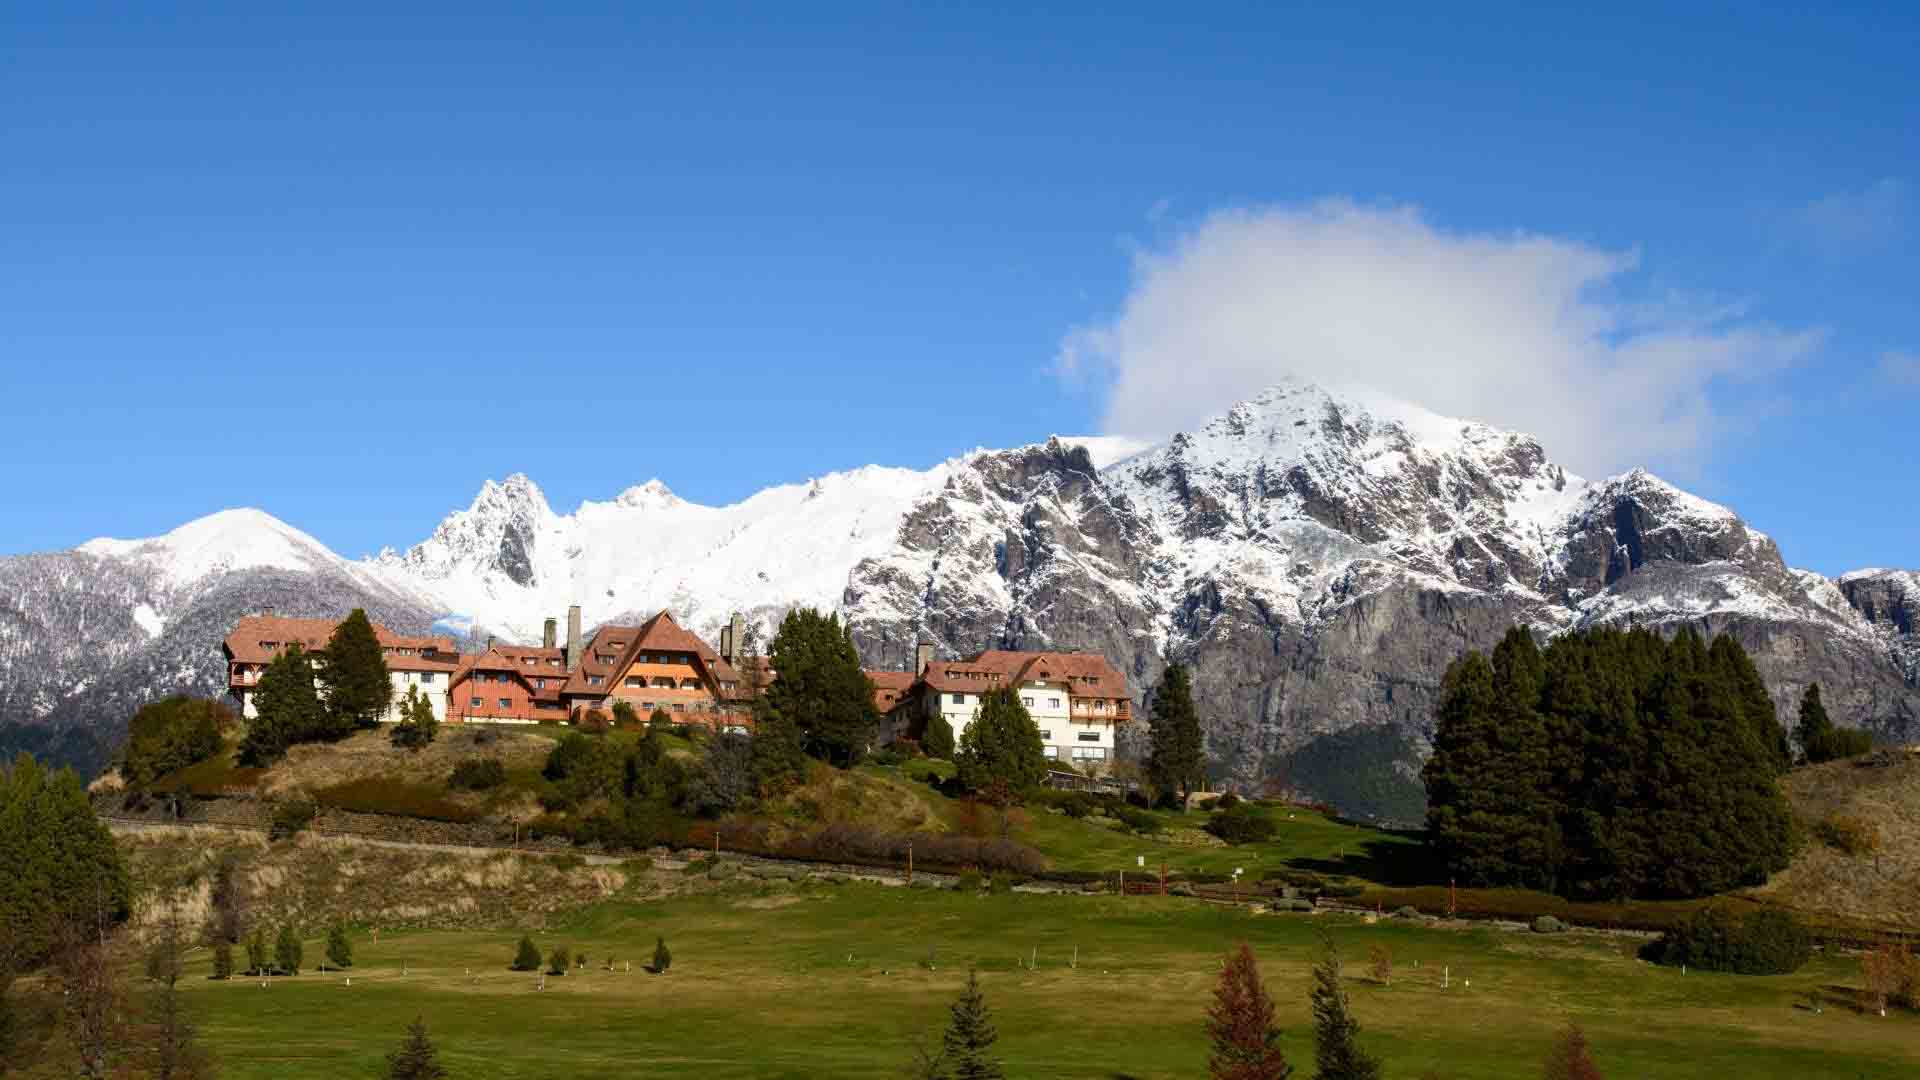  Argentina | Hiking Guide to Cerro Llao Llao, Bariloche